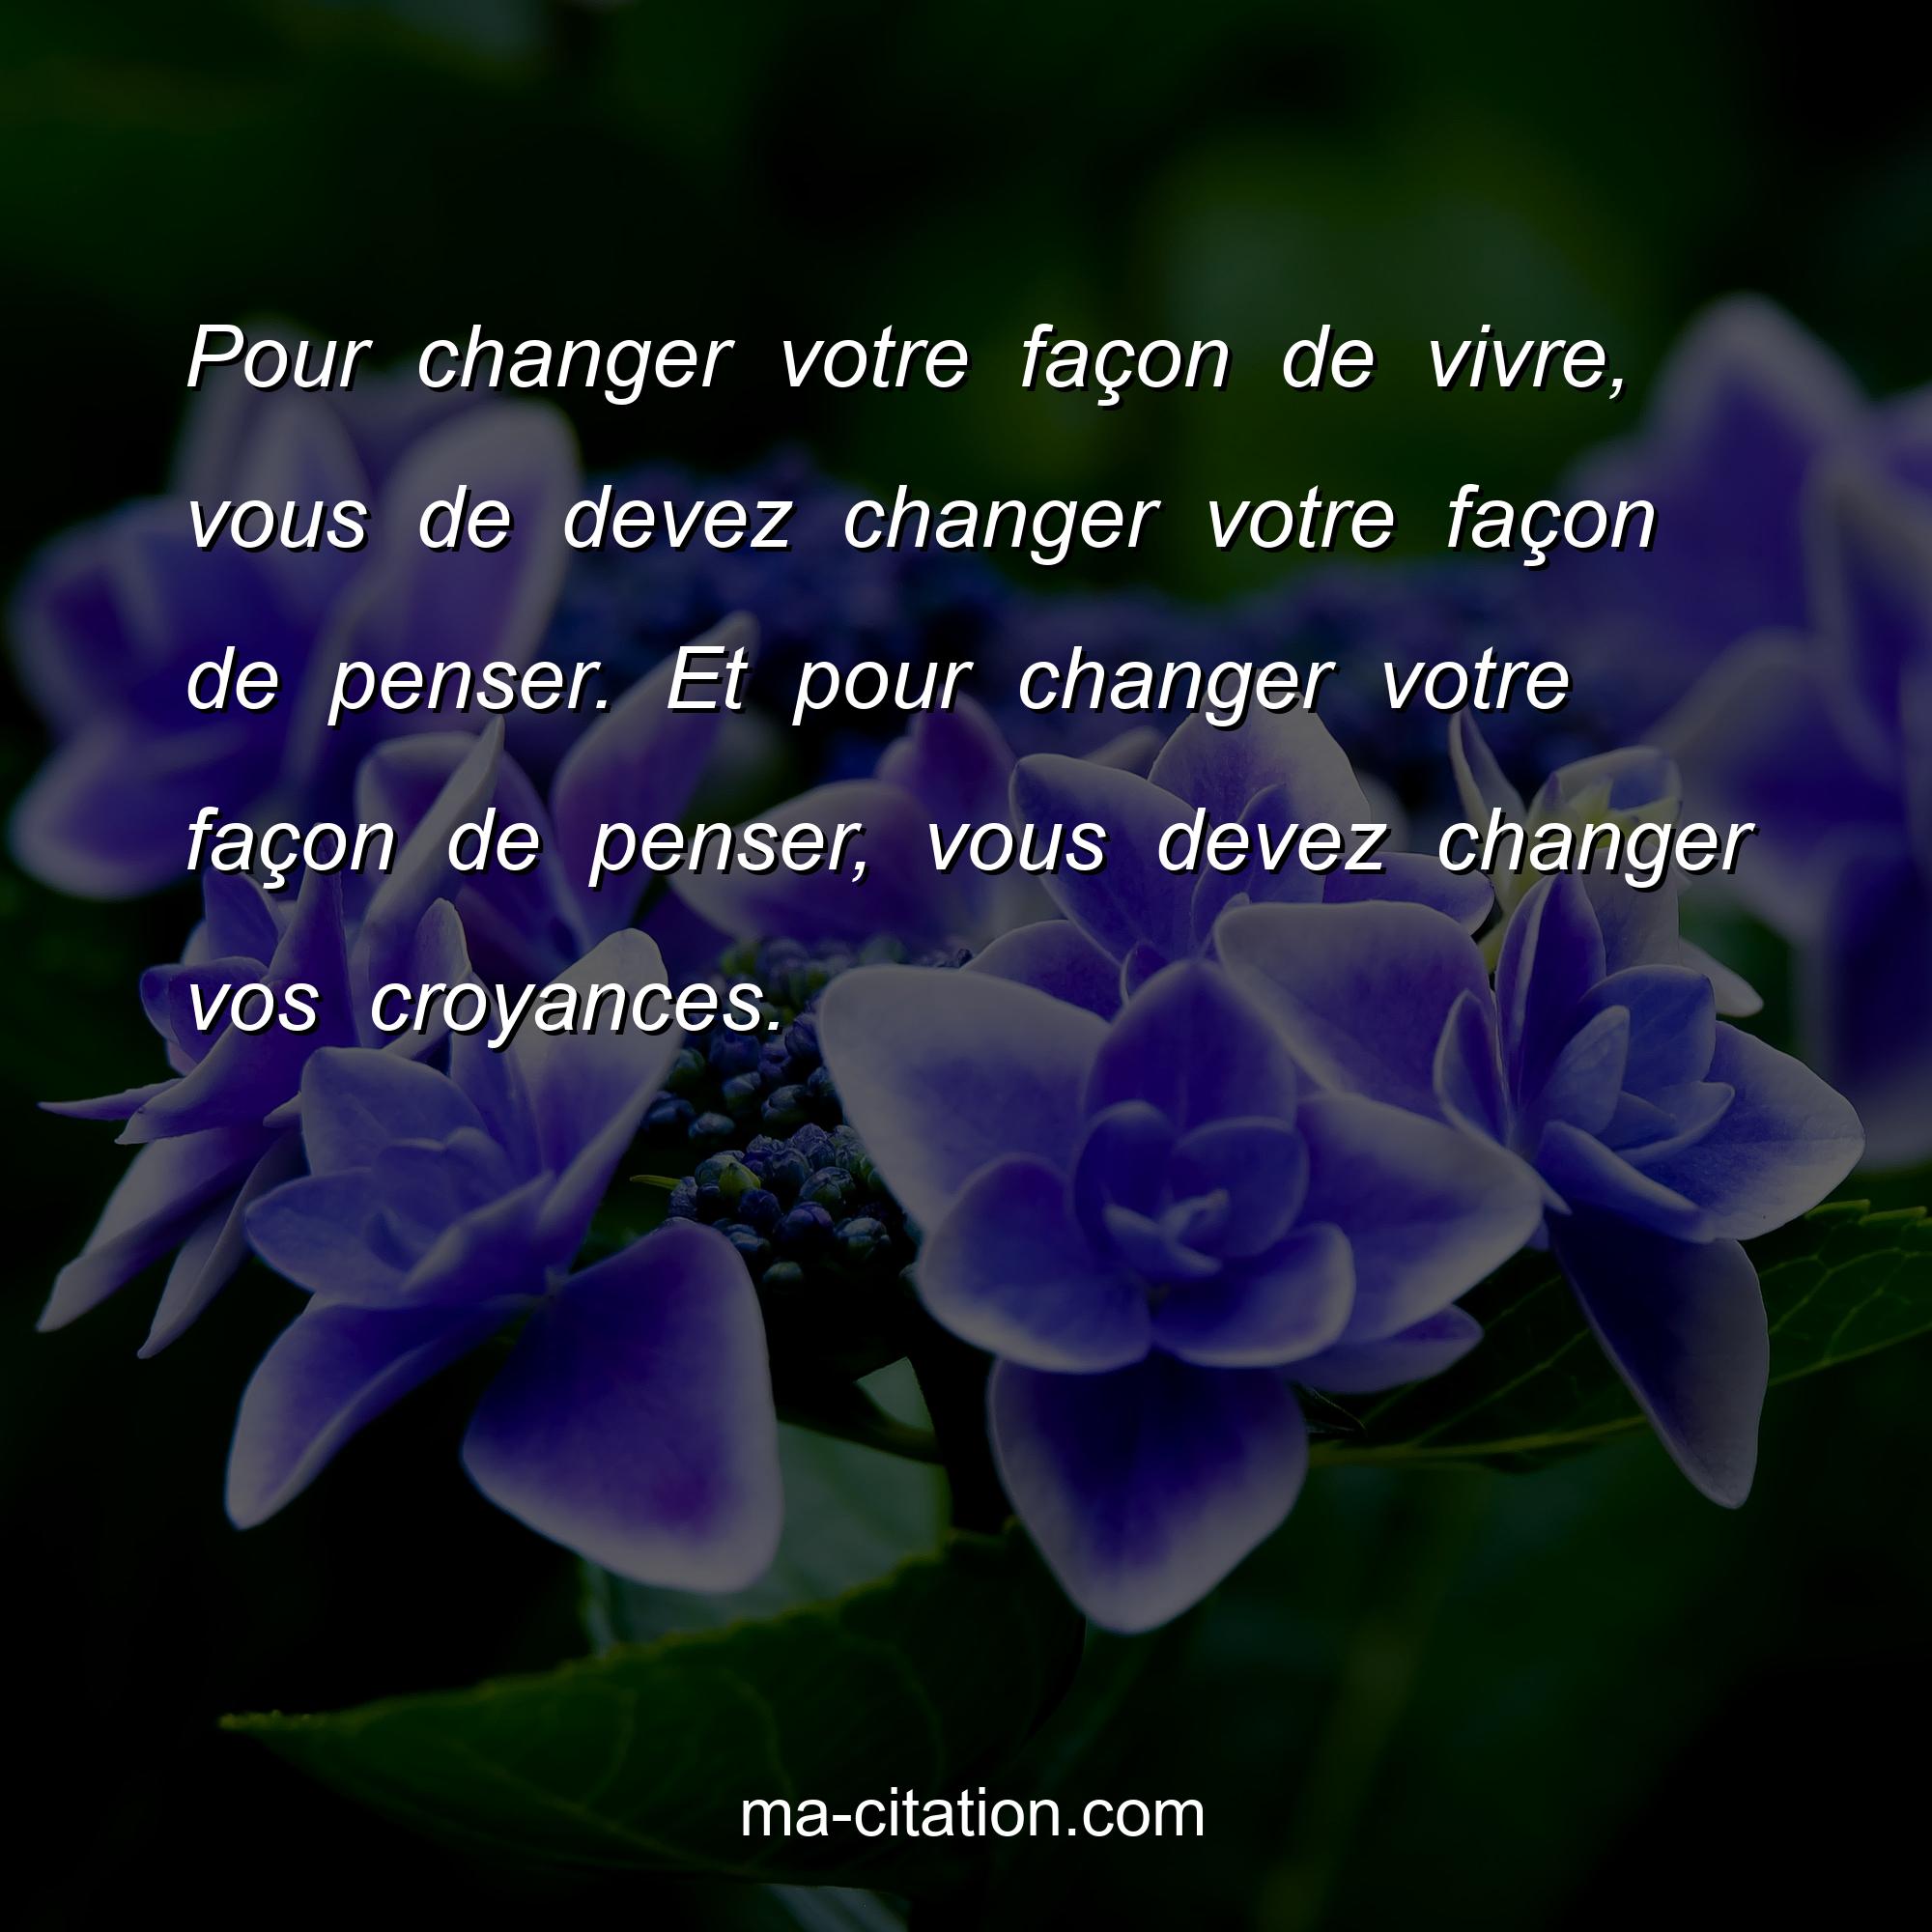 Ma-Citation.com : Pour changer votre façon de vivre, vous de devez changer votre façon de penser. Et pour changer votre façon de penser, vous devez changer vos croyances. 